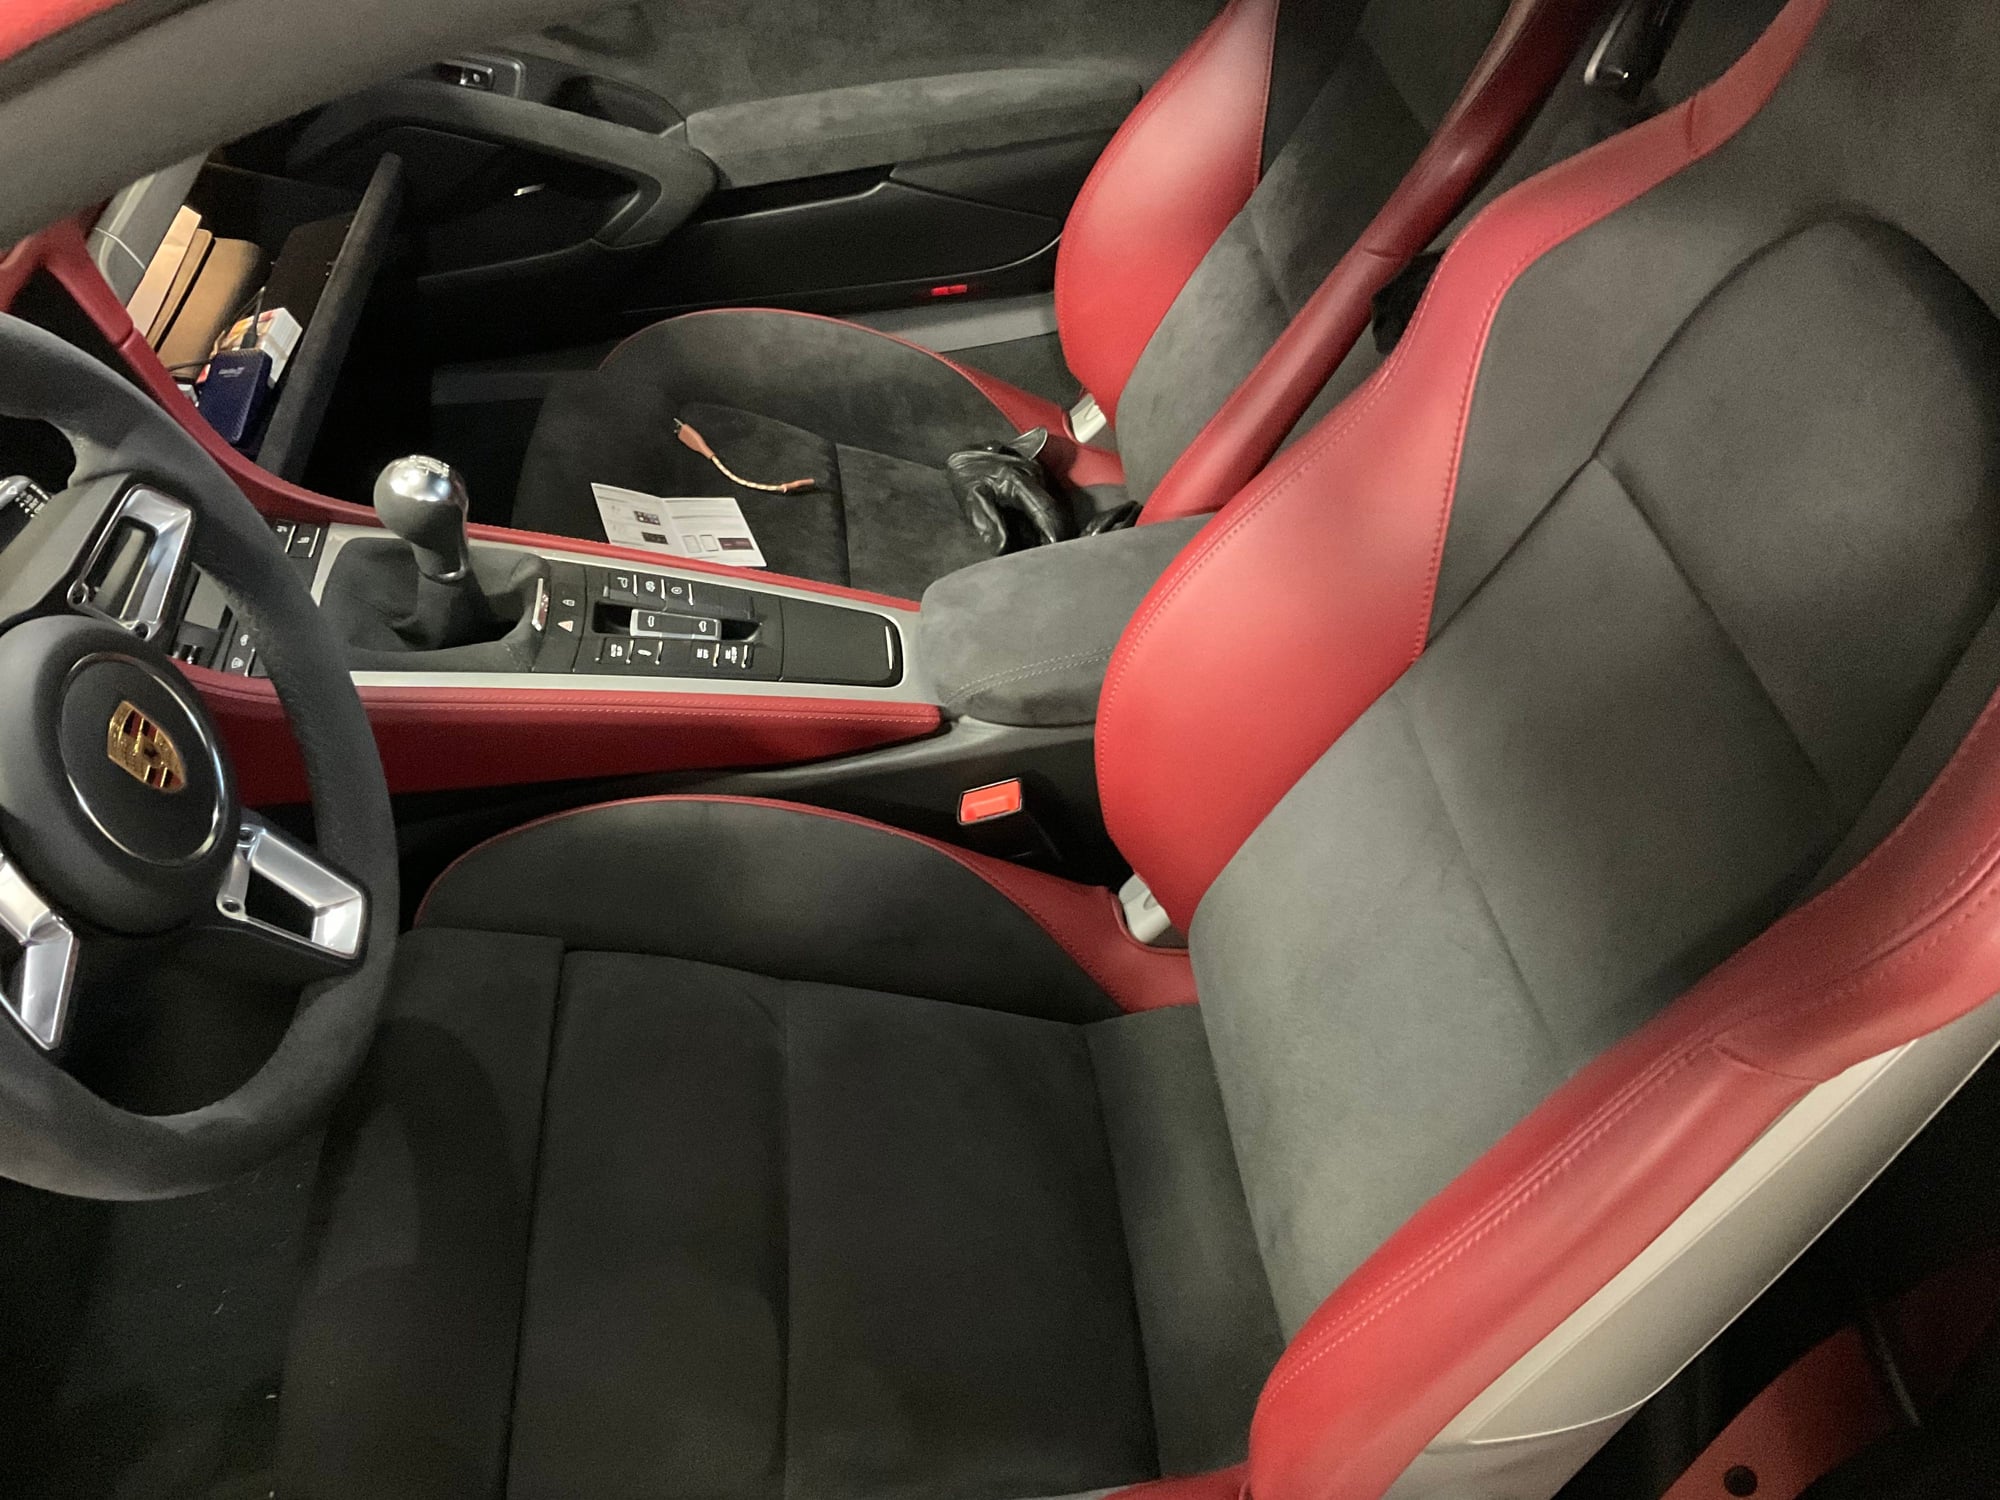 Leather conditioner - Rennlist - Porsche Discussion Forums